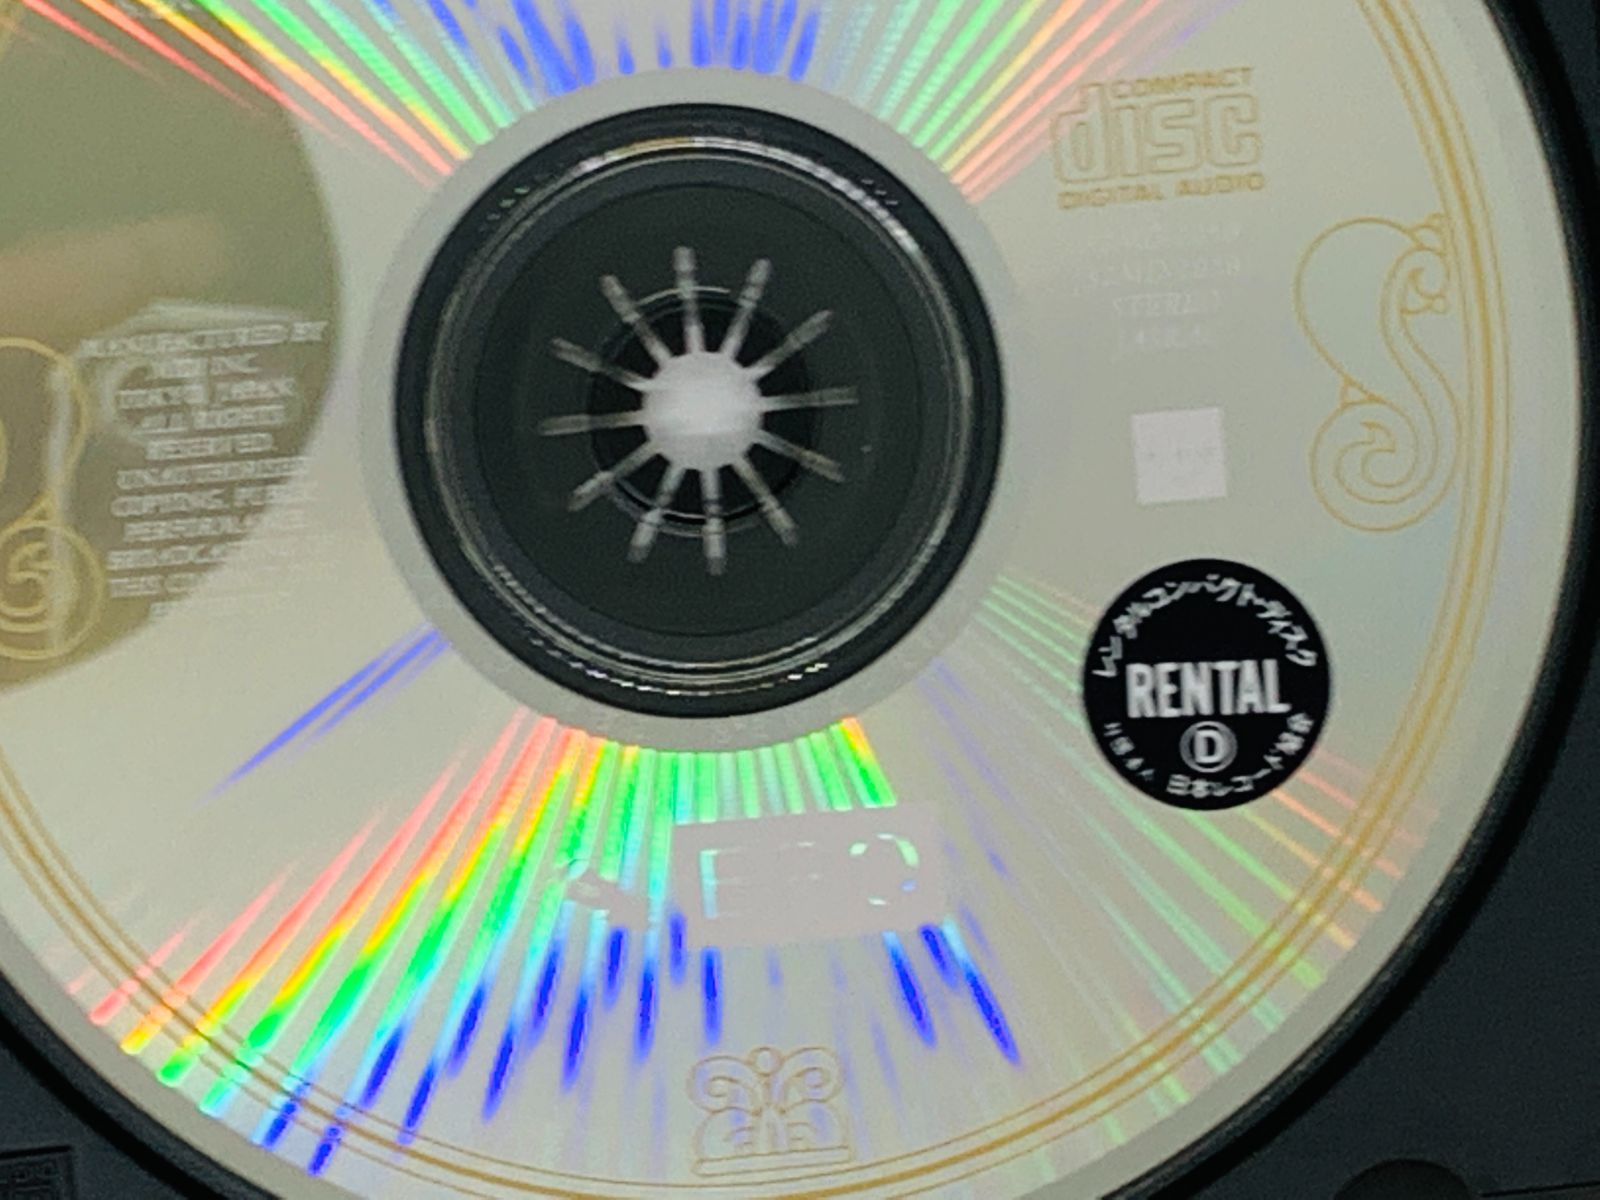 CD レンタル品 バラード エポ / EPO THE BALLADS / ふたりのメロディー 小さなKiss きゅんと アルバム 帯付き Z32